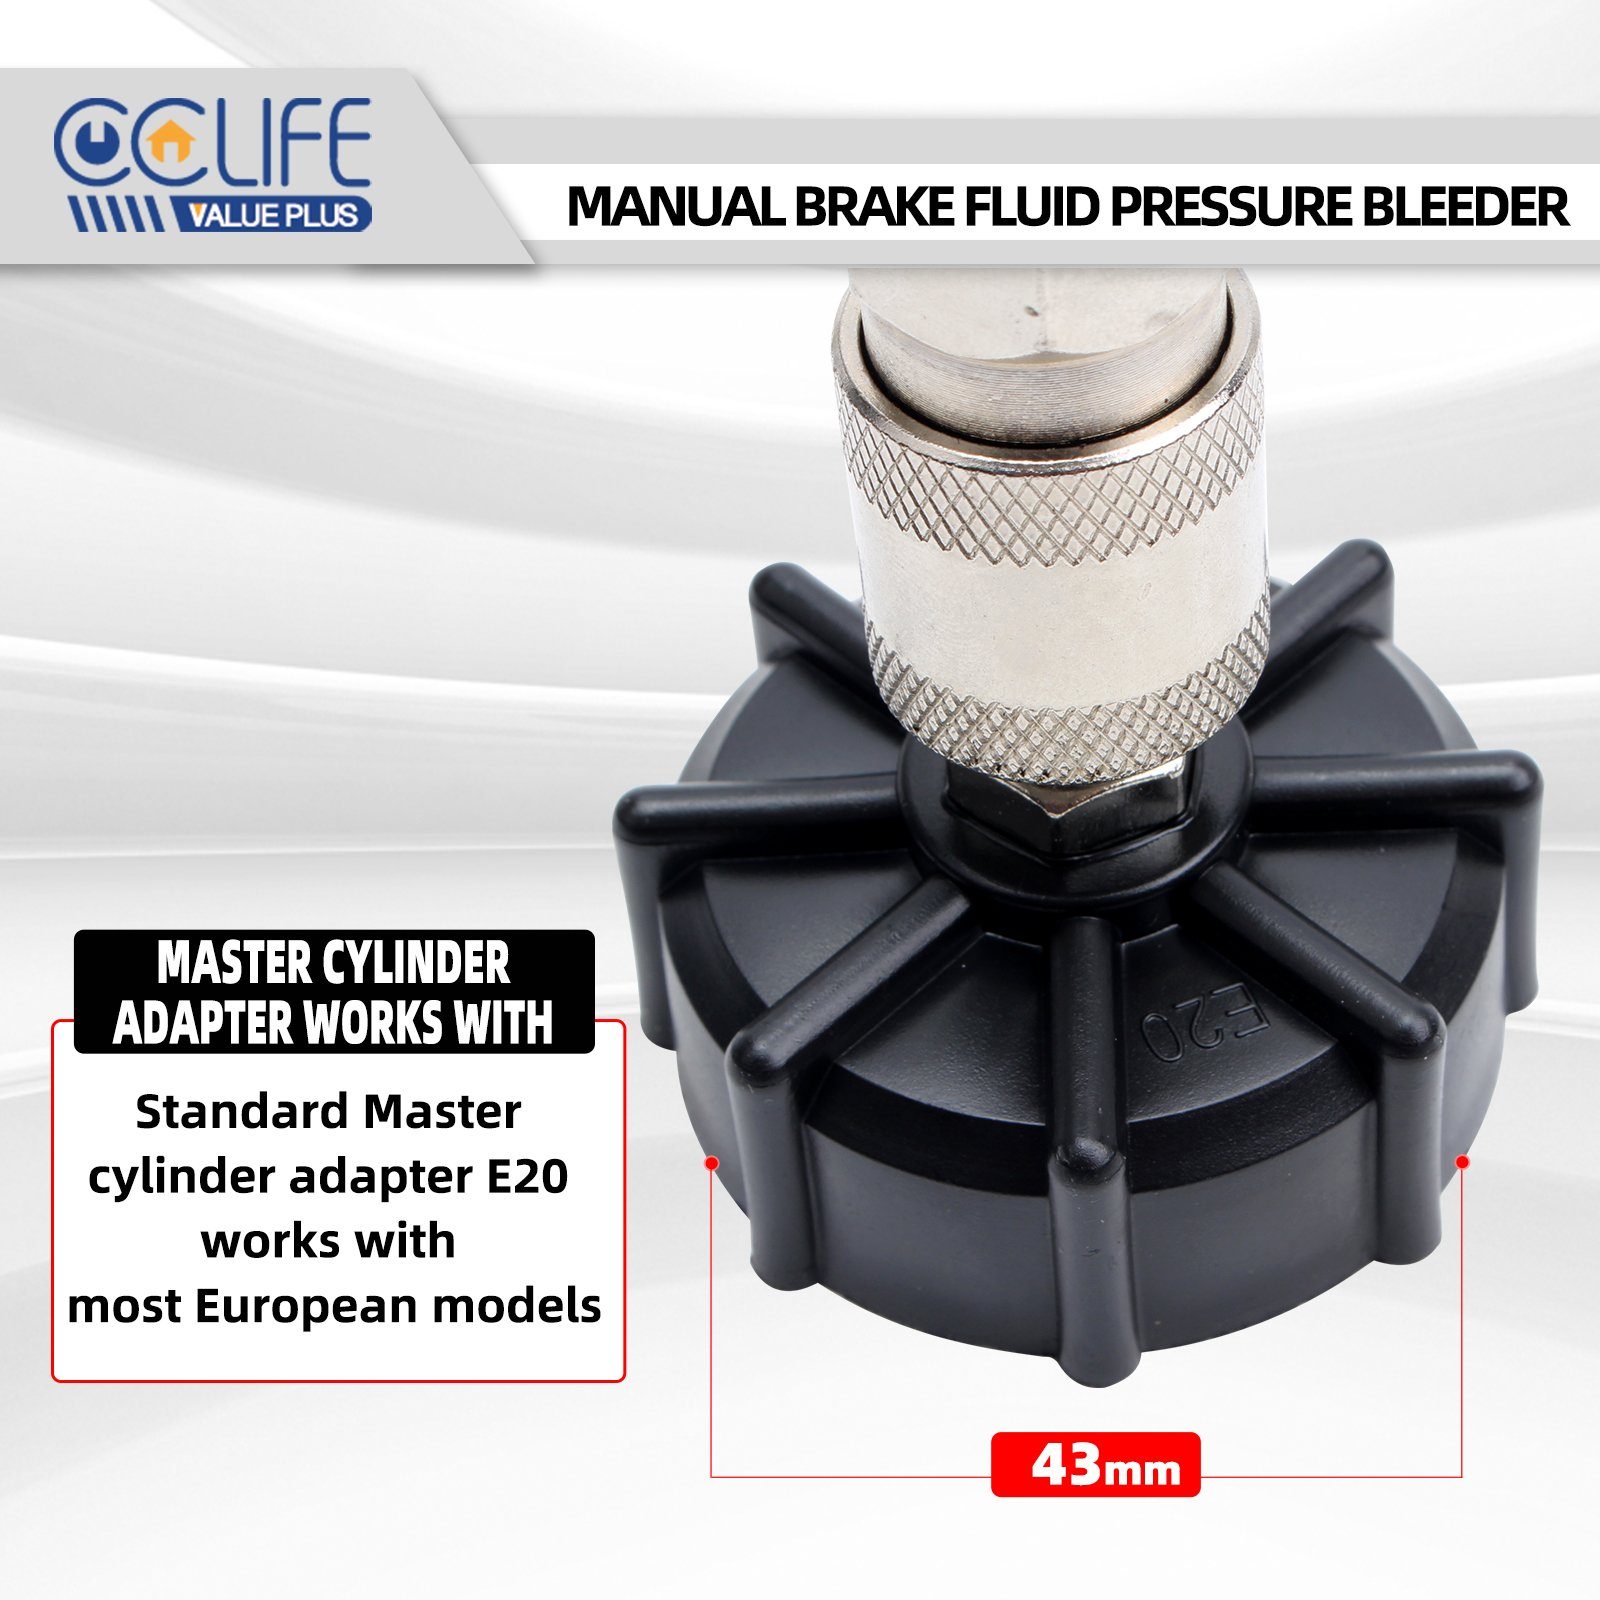 2L CCLIFE Bremsenentlüftungsgerät Bremsscheiben-Richtwerkzeug Bremsenentlüfter Bremsflüssigkeit